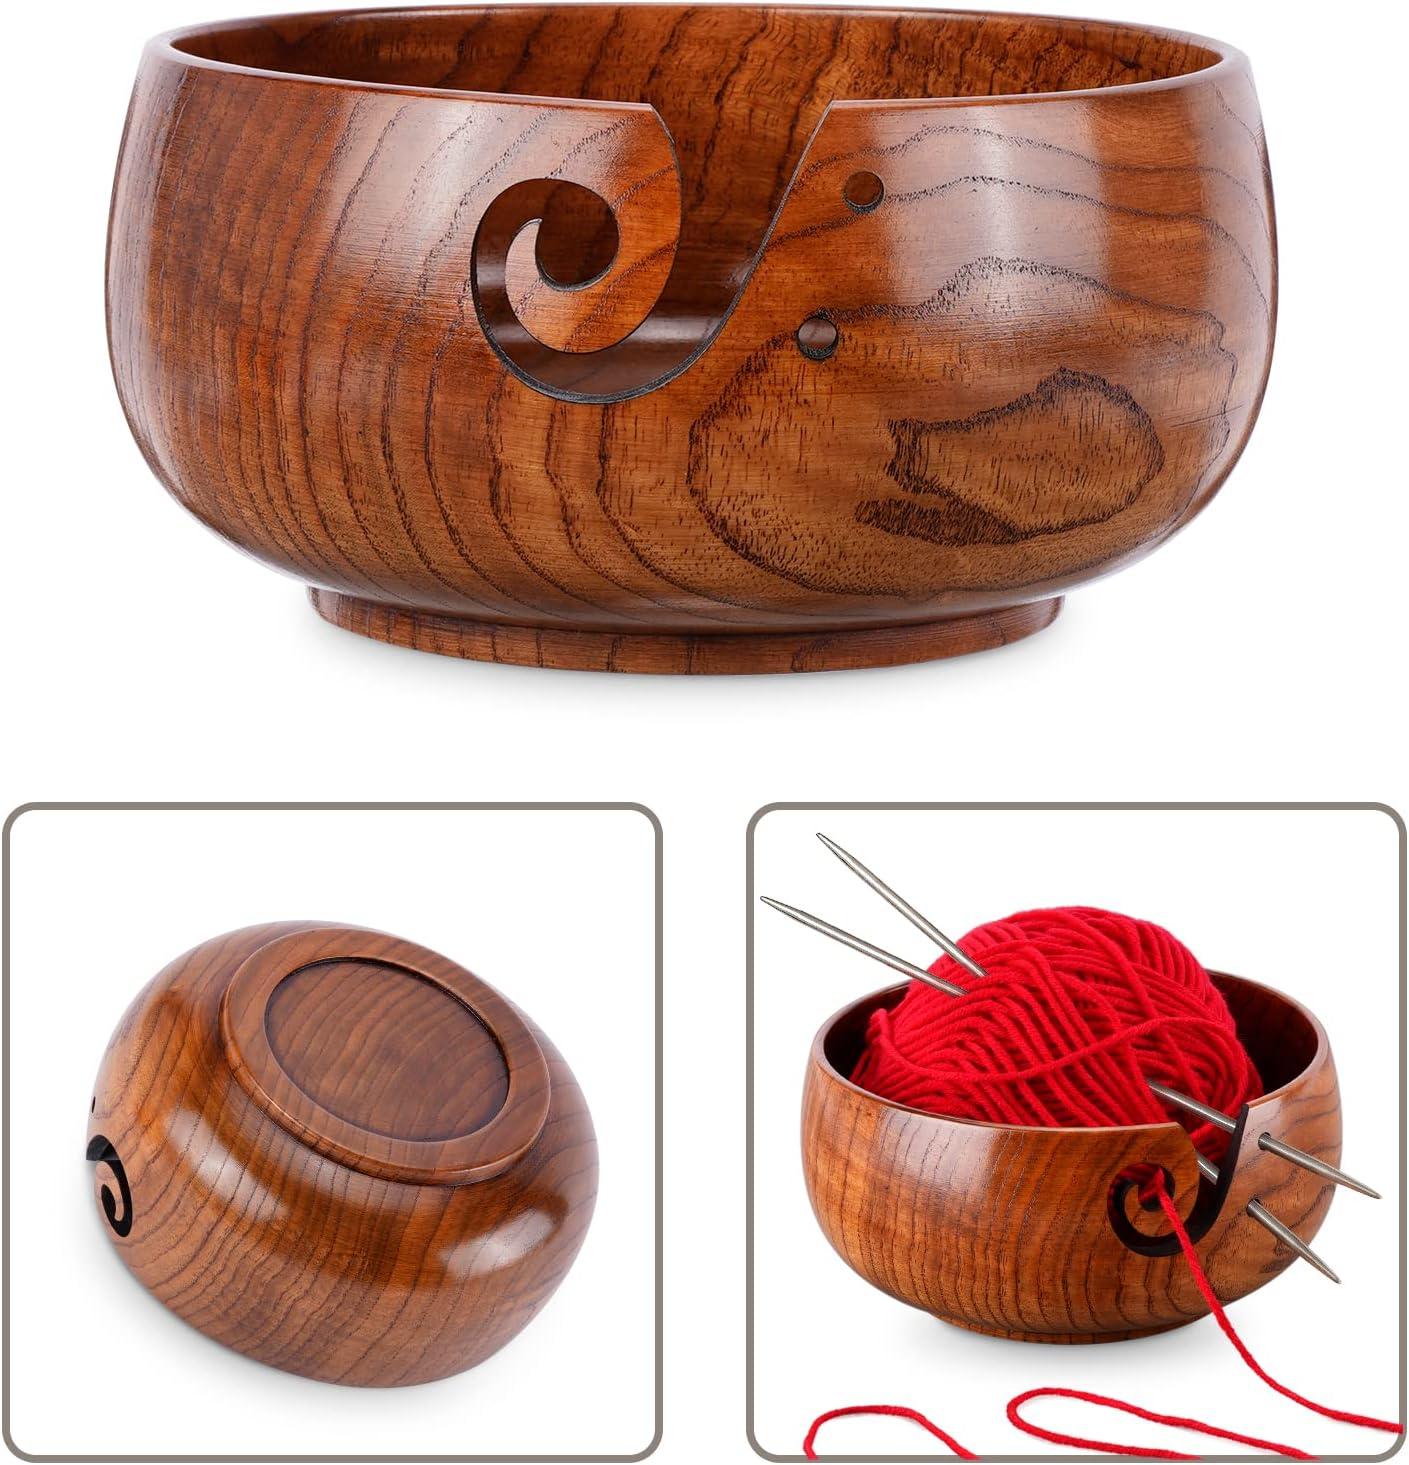 Wooden Yarn Bowl,Yarn Bowls with Lid for Knitting Crochet Yarn Ball Holder  Handmade Yarn Storage Bowl for DIY Knitting Crocheting Crochet Kit